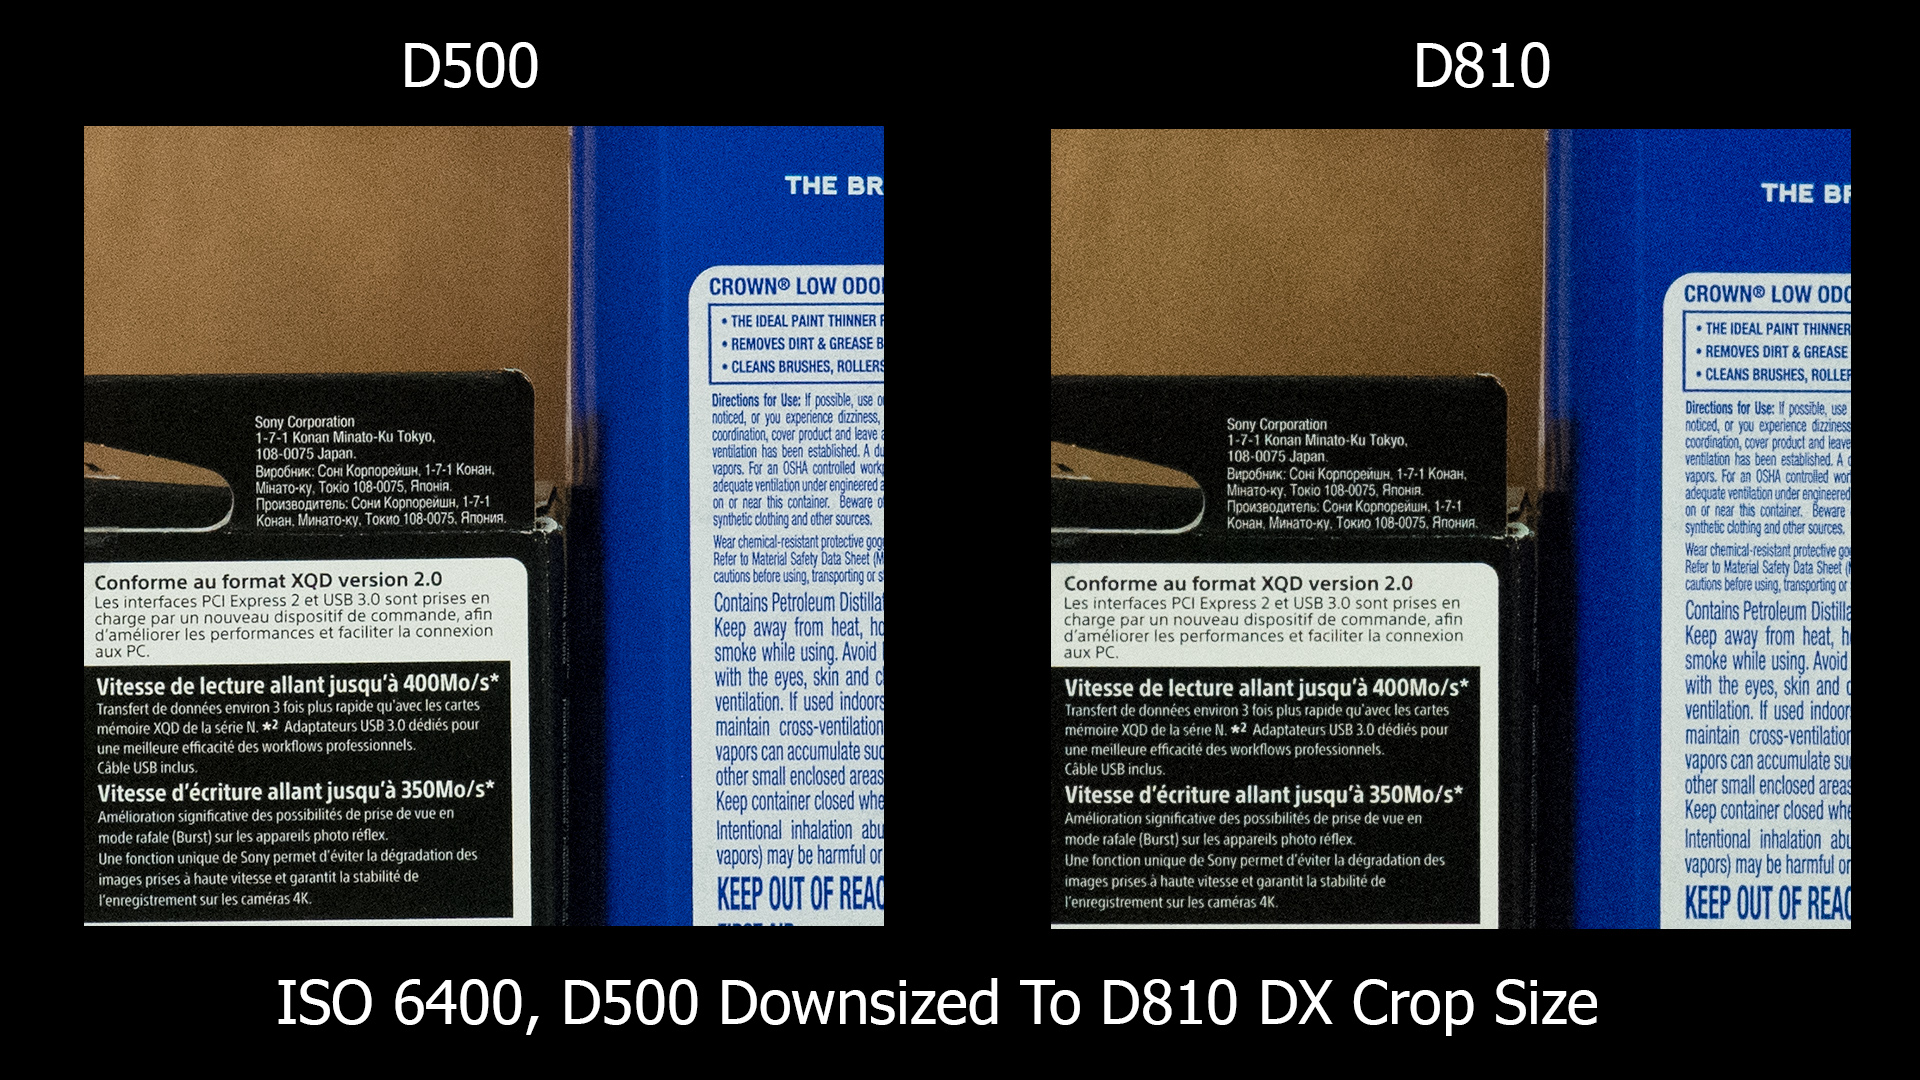 D500 vs D810 ISO 6400 D500 downsized to 810 DX